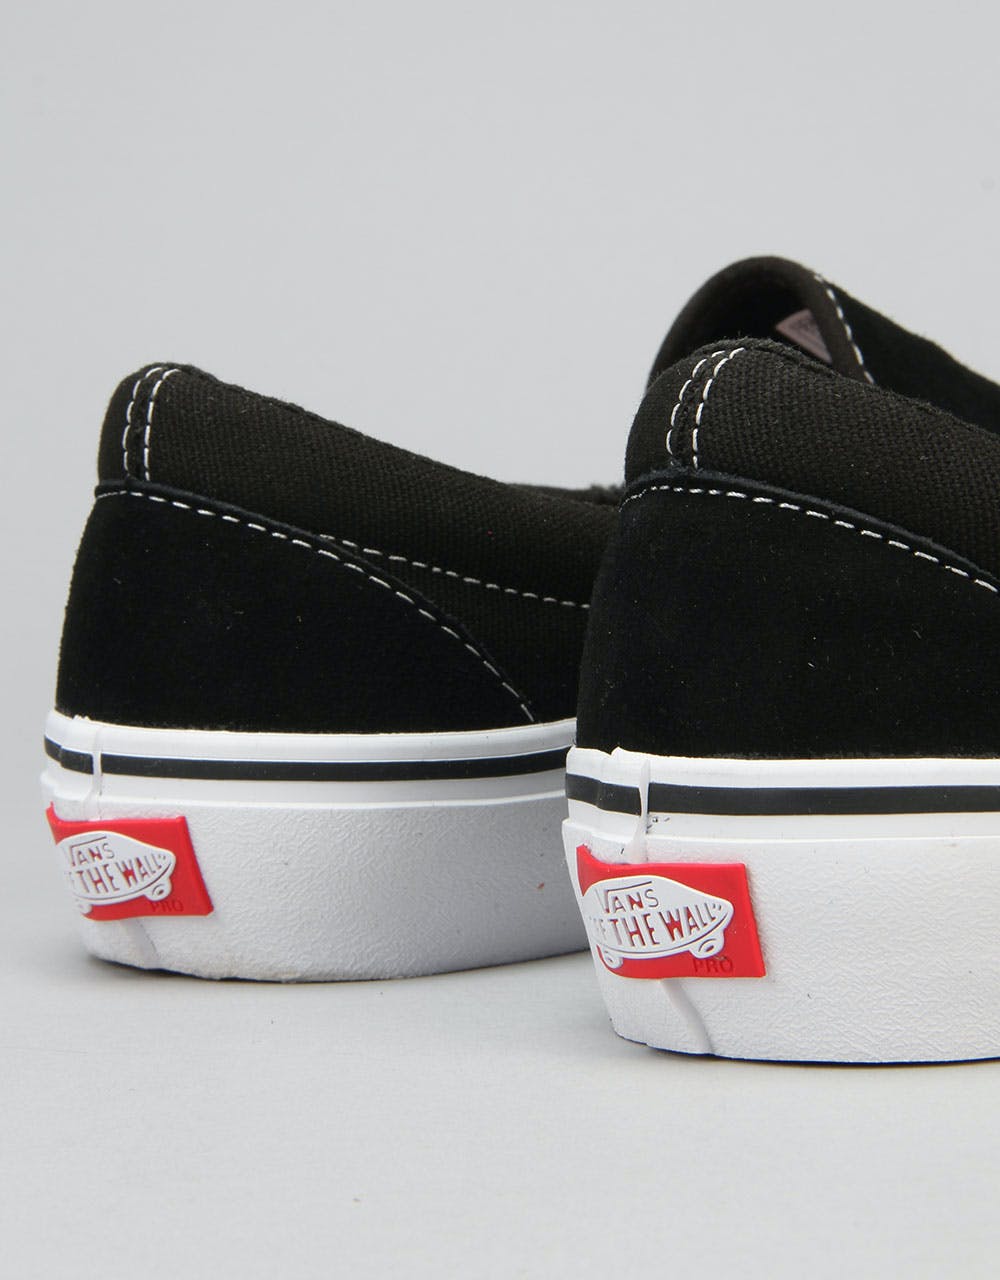 Vans Slip On Pro Skate Shoes - Black/White/Gum